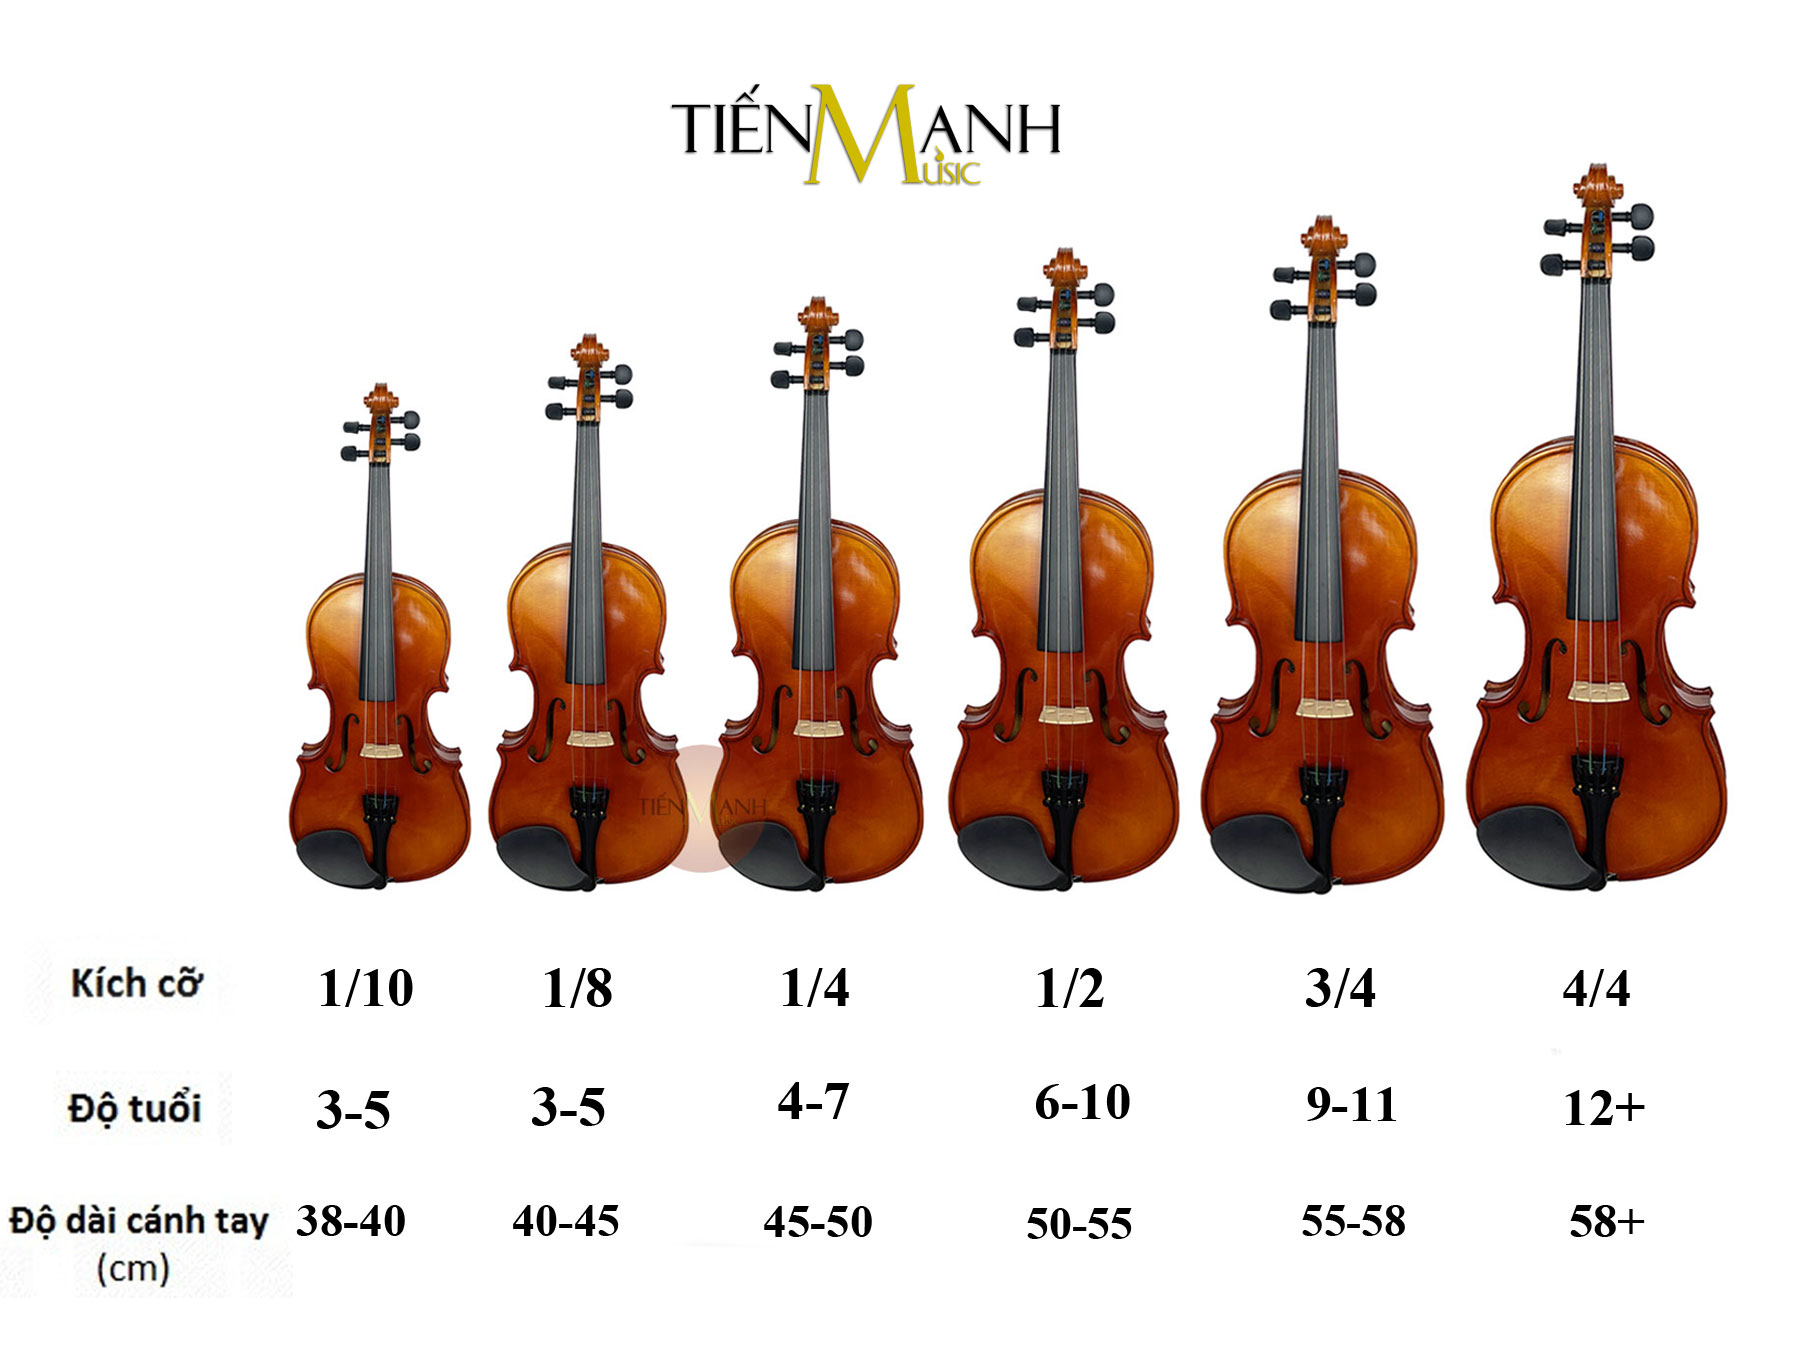 [Chính Hãng, Gỗ Tấm, Tặng Sticker] Đàn Violin Omebo RV205 Size 4/4, 3/4, 1/2, 1/4, 1/8, 1/10, 1/16 - Vĩ...